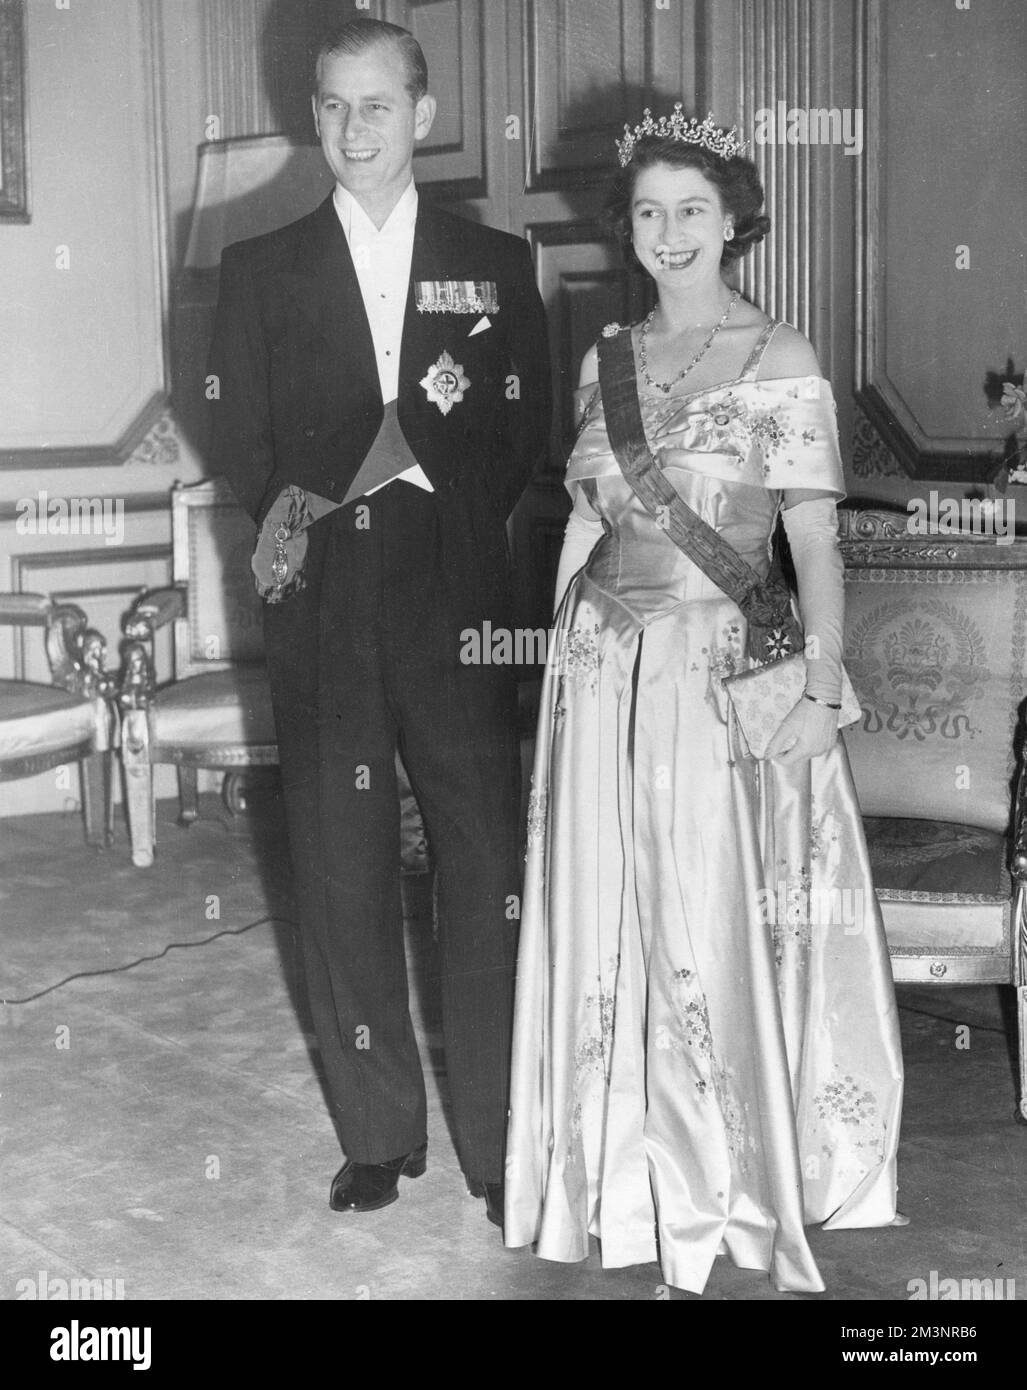 La regina Elisabetta II, quando la principessa Elisabetta, fece foto con suo marito, il principe Filippo, duca di Edimburgo, al Teatro dell'Opera di Parigi nel maggio 1948. Data: 1948 Foto Stock